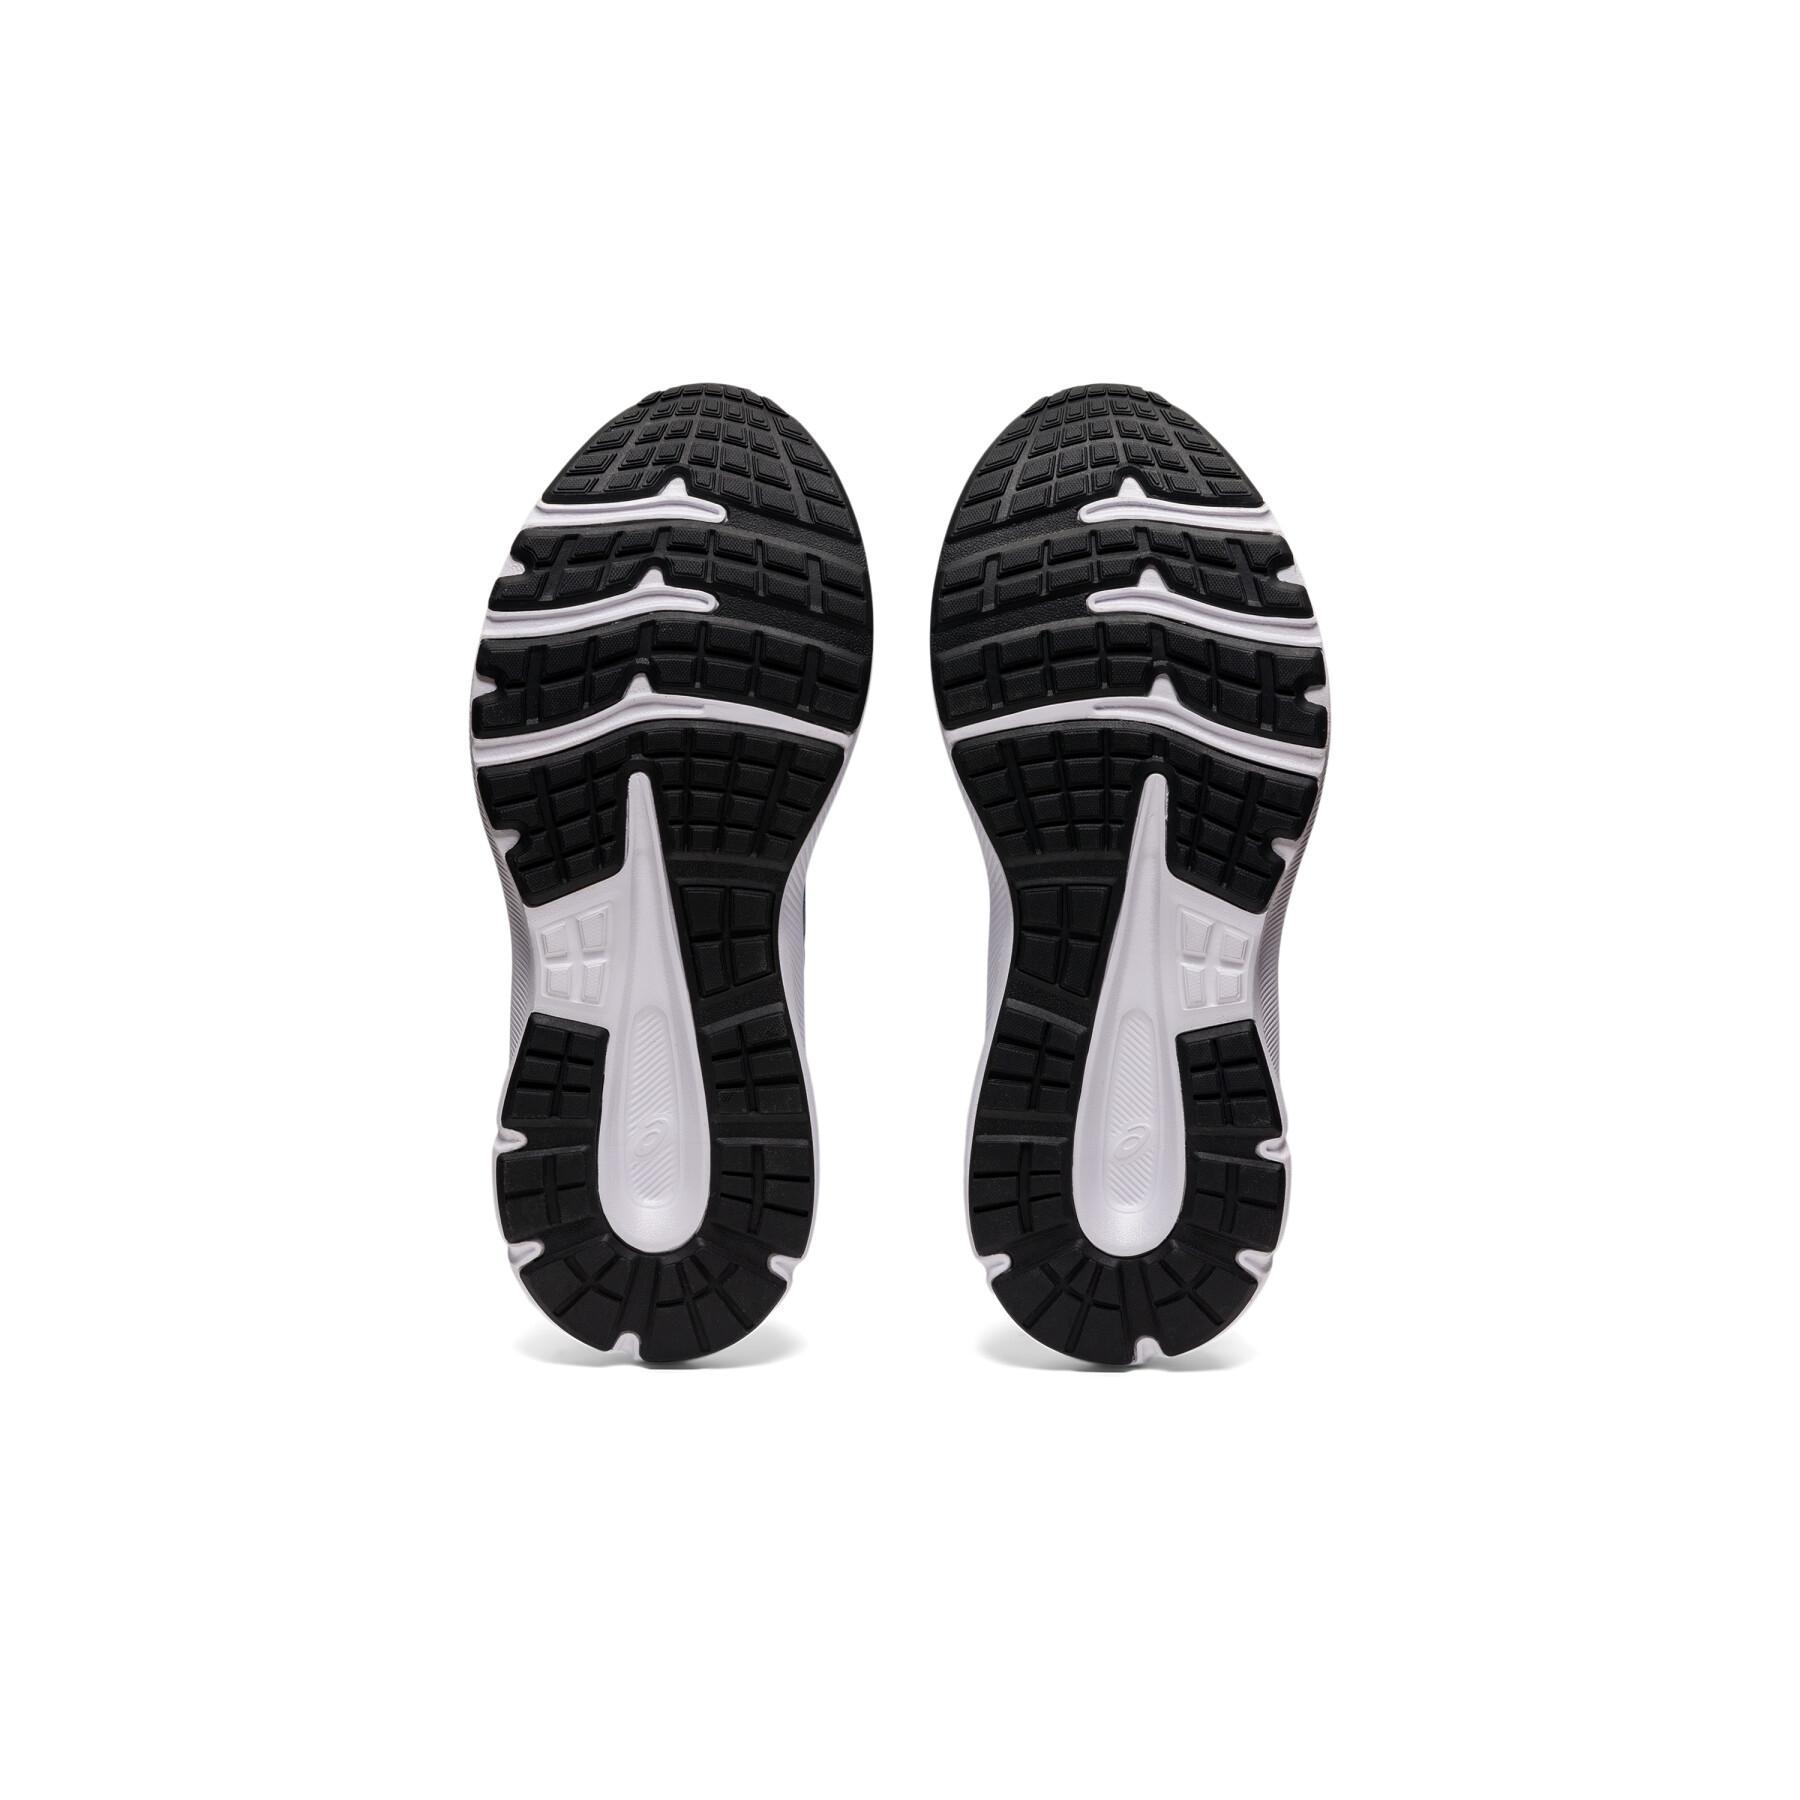 Chaussures de running enfant Asics Jolt 3 Gs